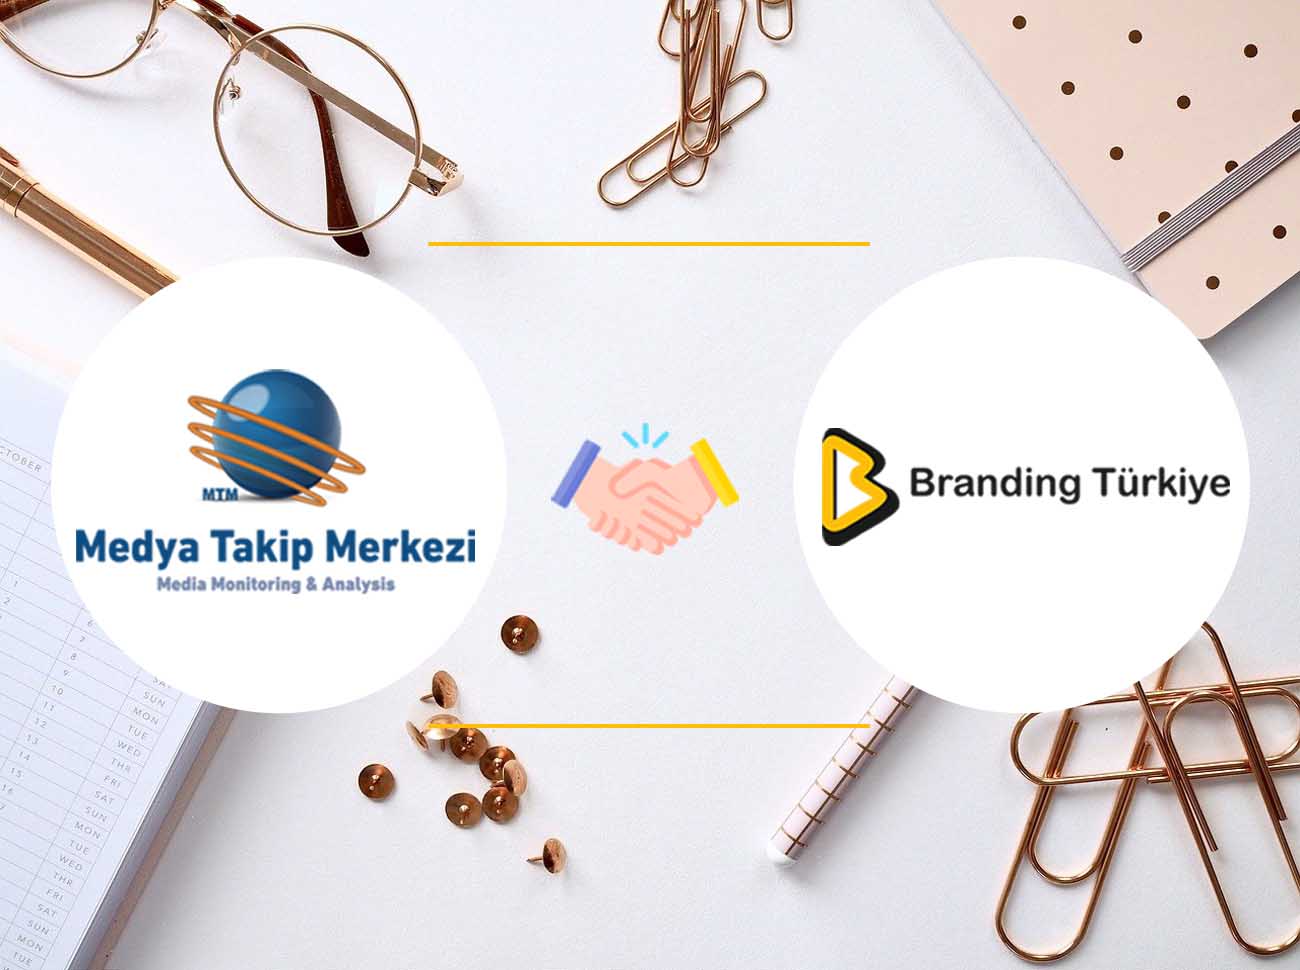 Branding Türkiye’nin Medya Takip Sponsoru Medya Takip Merkezi Oldu